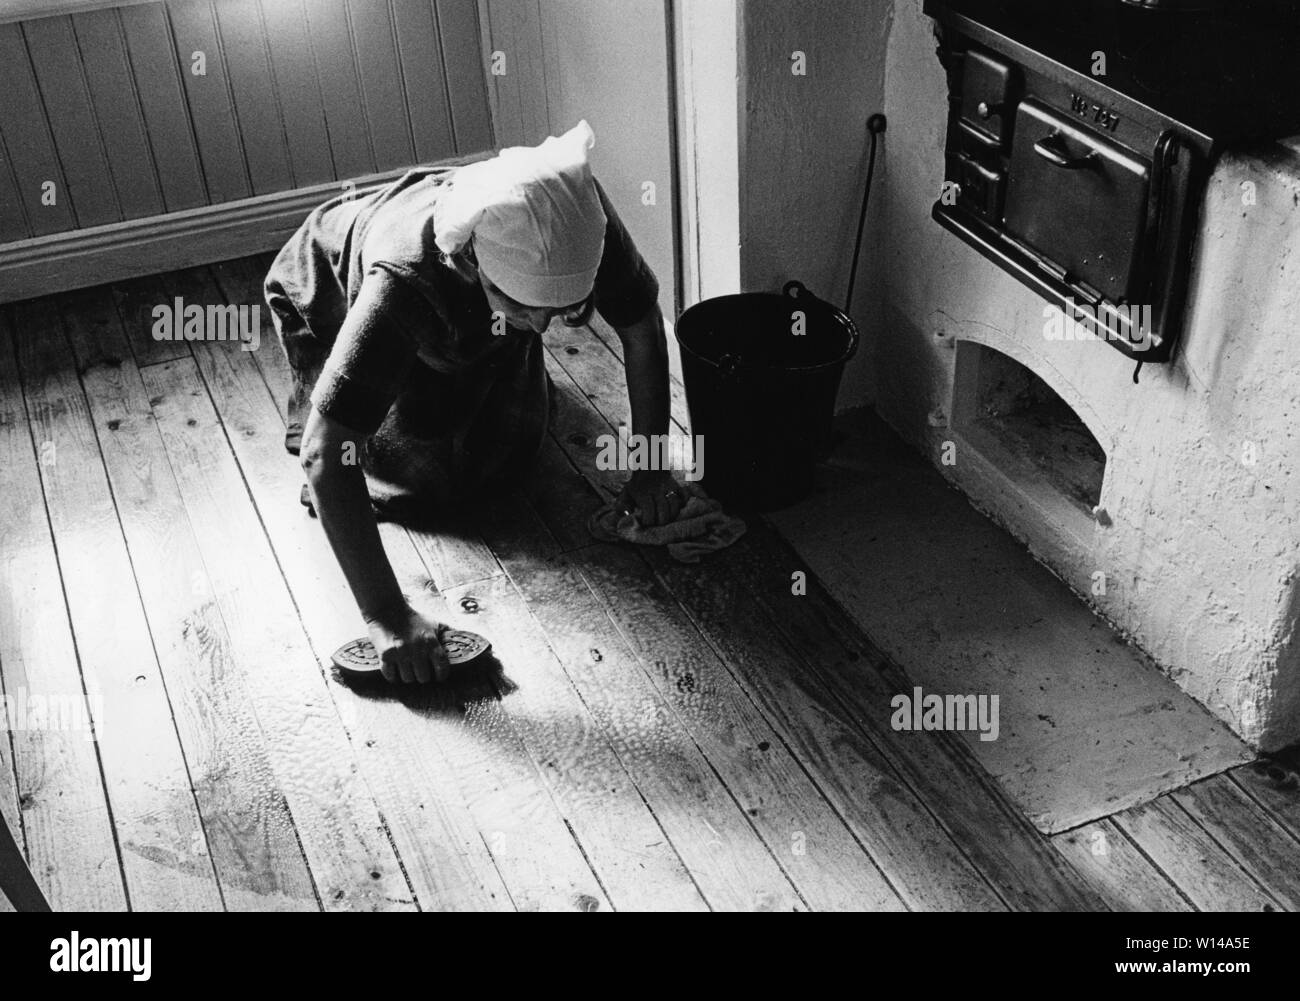 Reinigung von Böden. Eine alte Frau auf dem Boden liegen und einem Schrubber mit den Küchenboden sauber zu erhalten. Eine alte Küche aus Holz Herd gesehen wird. Stockfoto